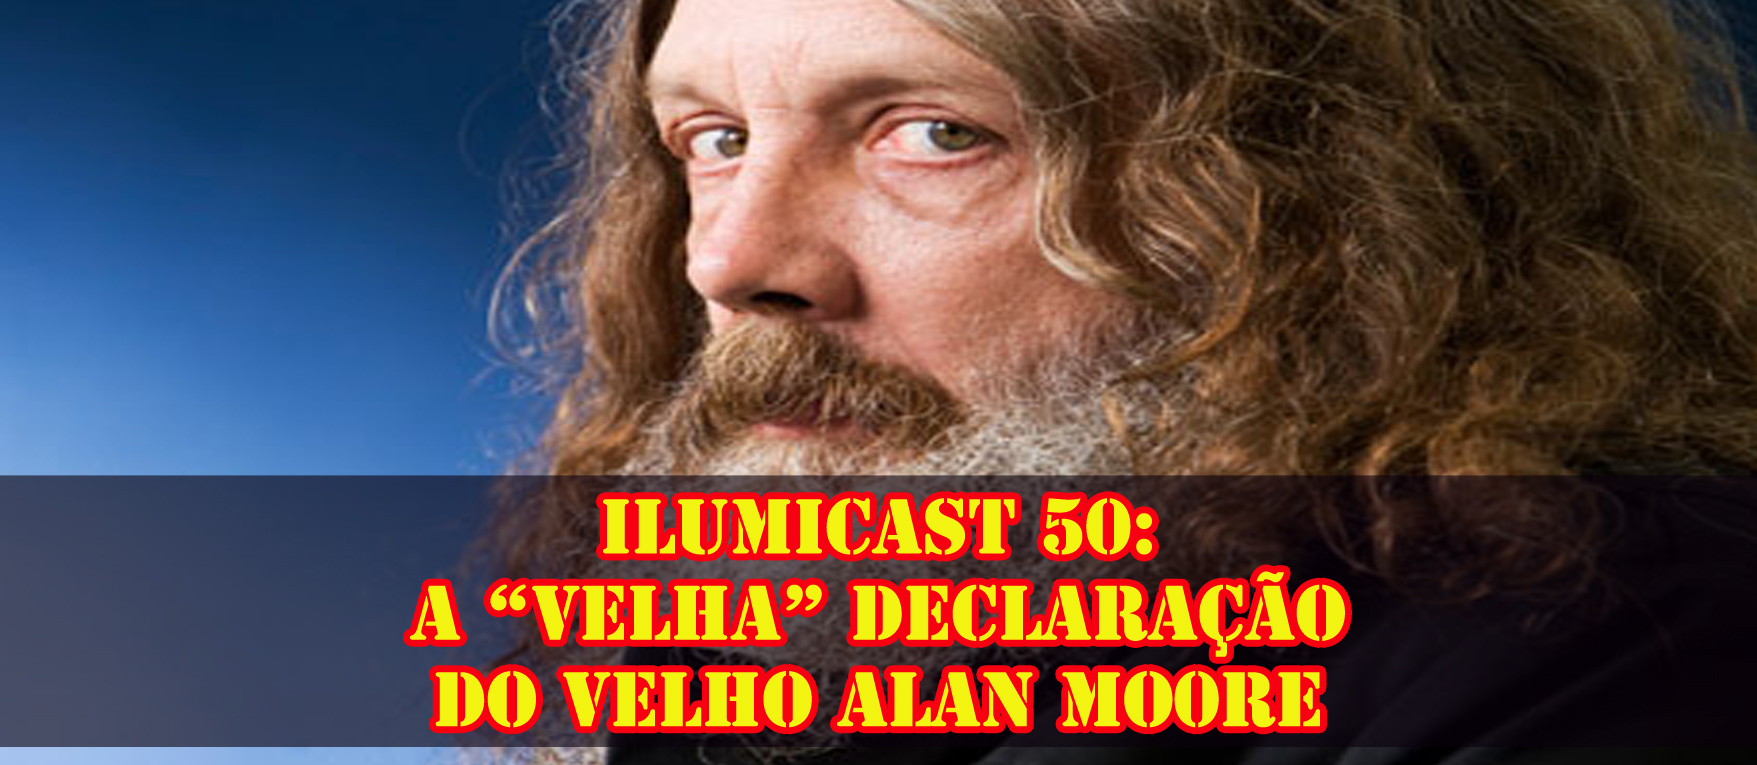 Você está visualizando atualmente Ilumicast 50: A “velha” declaração do velho Alan Moore.